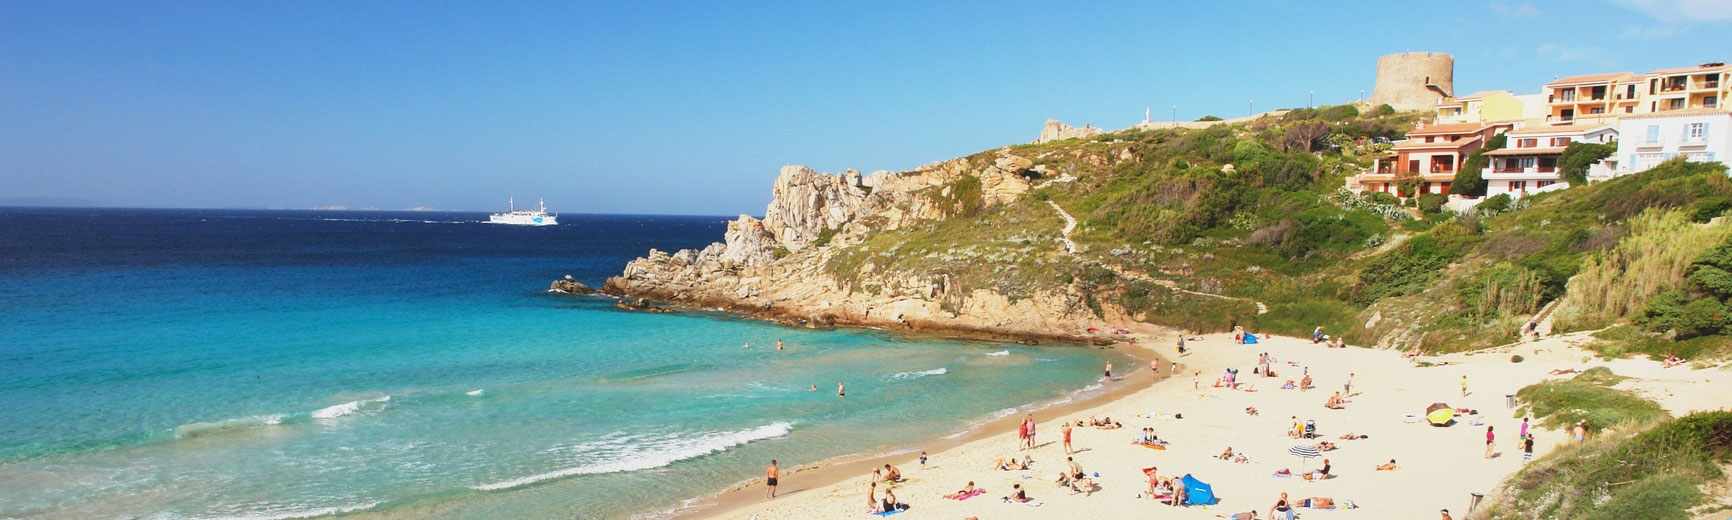 Beach in Santa Teresa di Gallura, Sardinia.